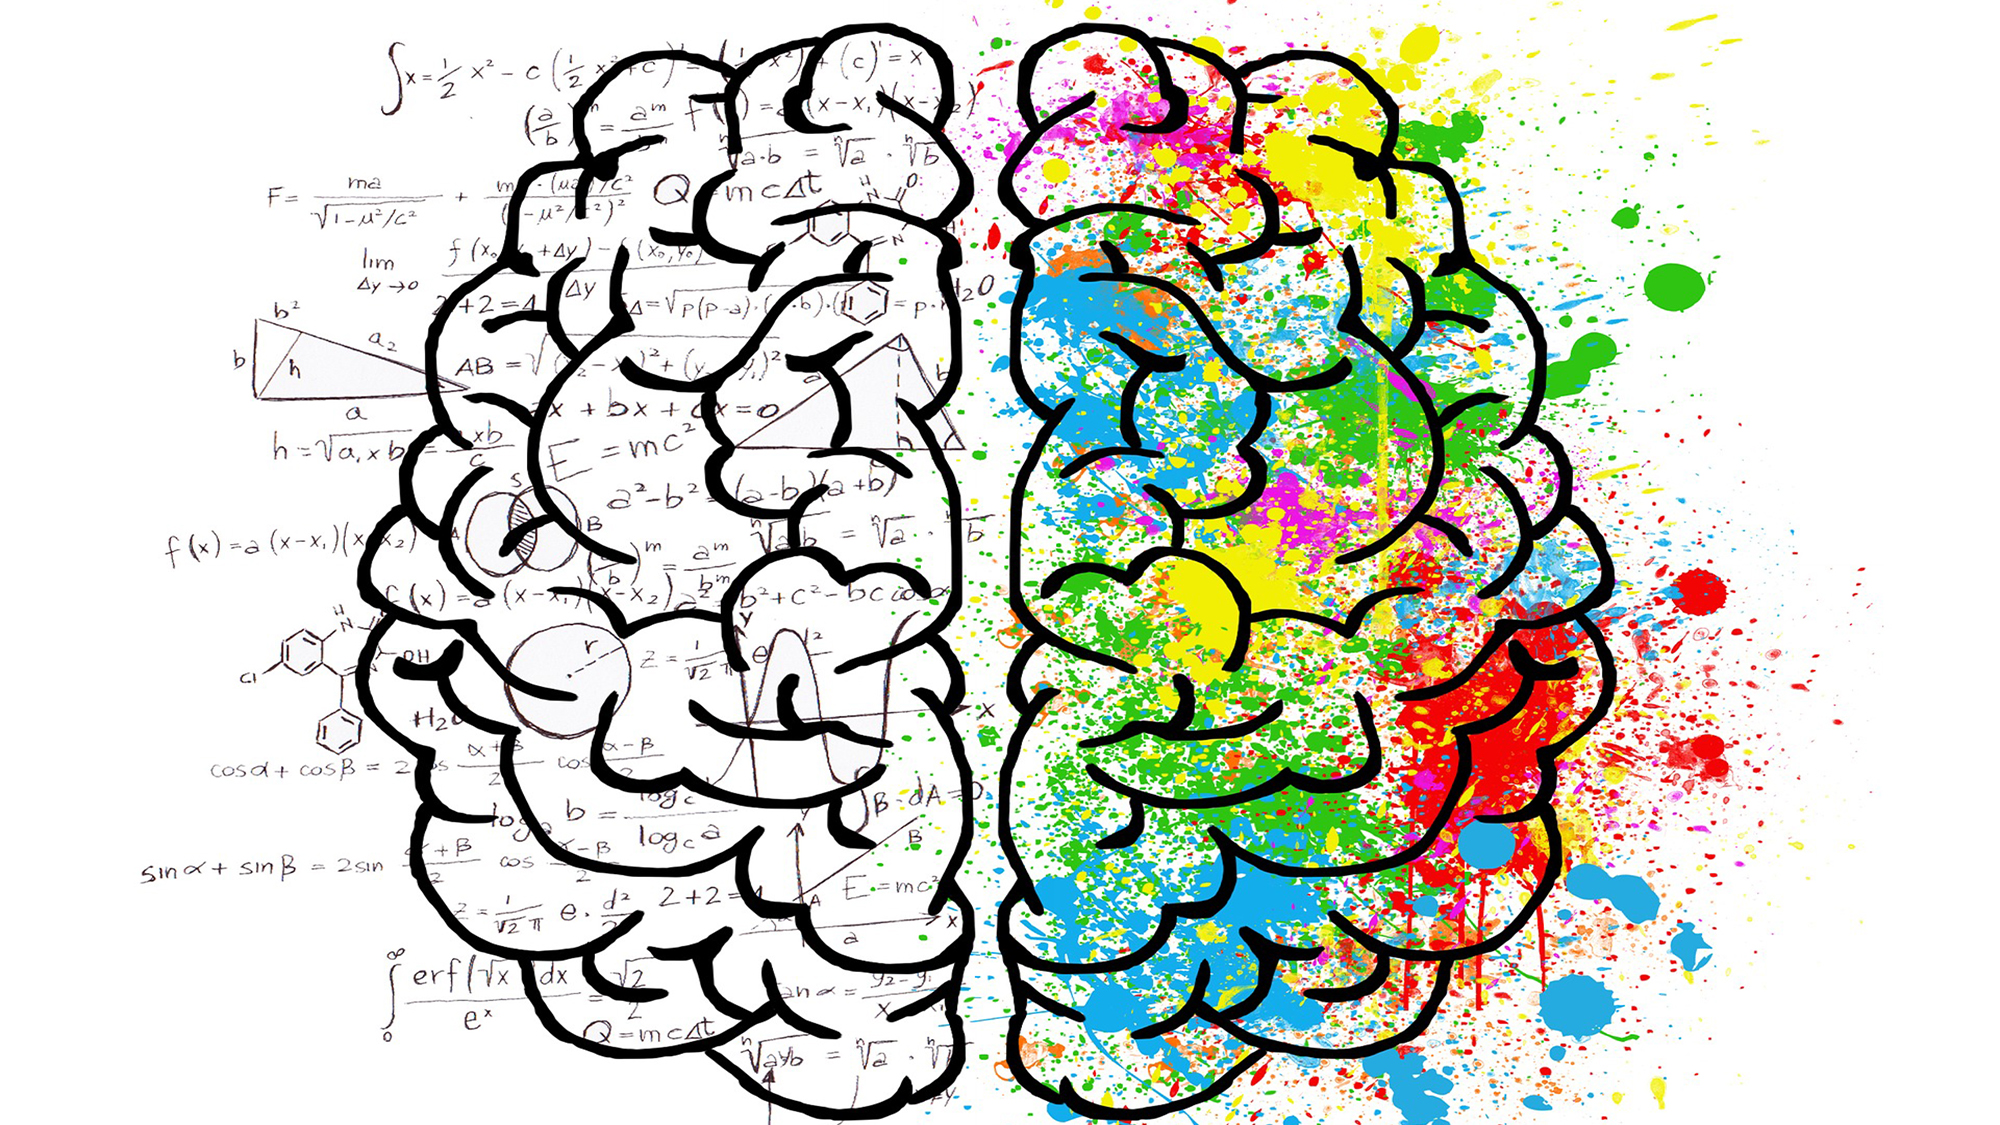 El cervell: l'hemisferi dret registra memòries visuals i espacials i l’esquerre registra les memòries verbals, com paraules i nombres. Imatge de Pixabay.